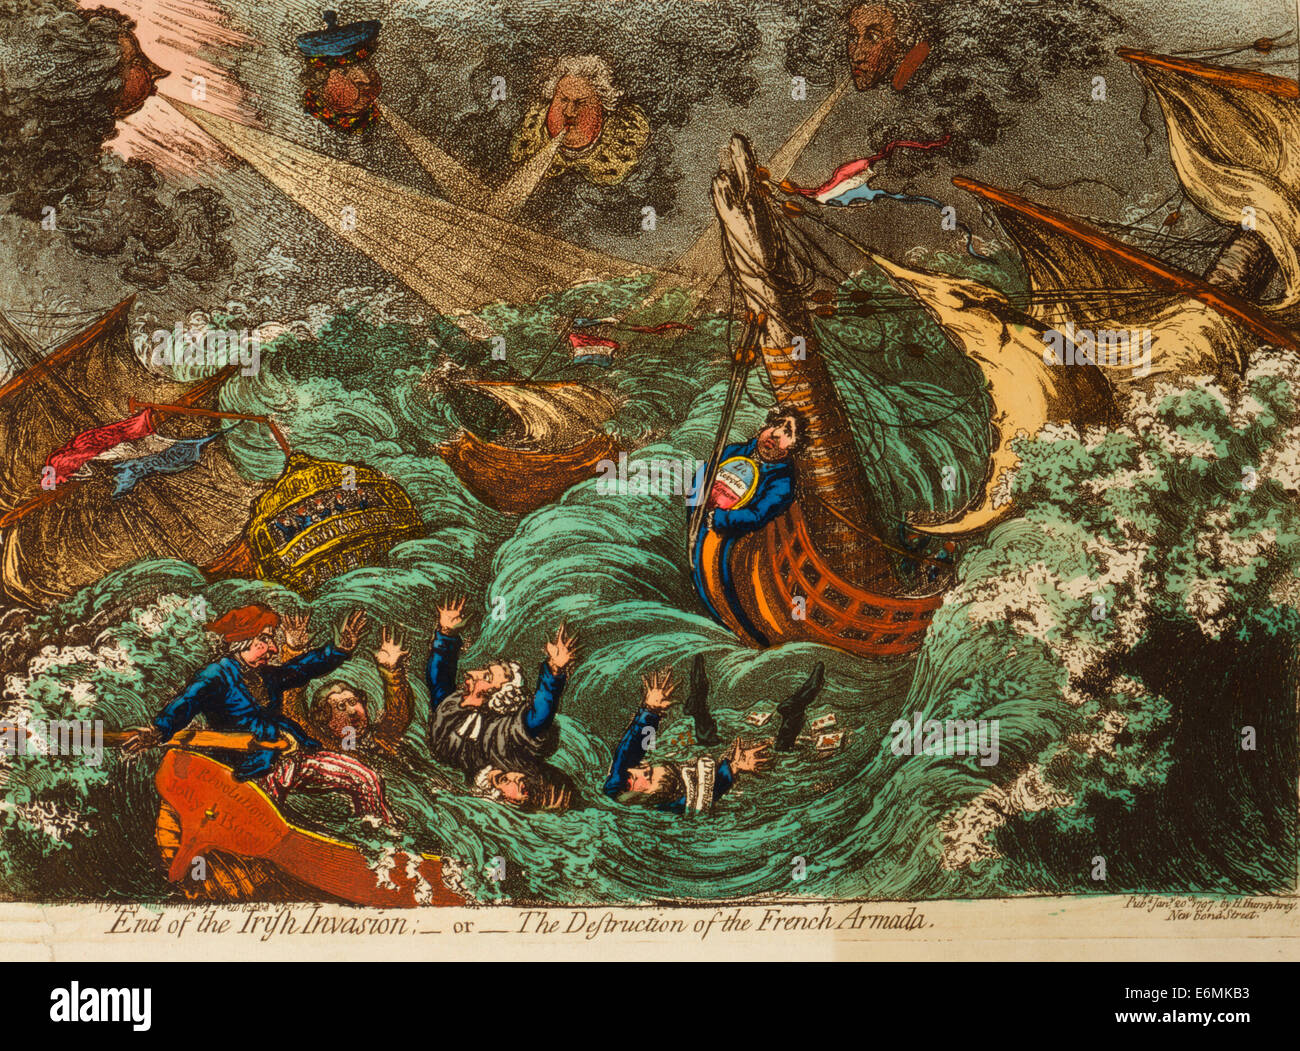 Ende der irischen Invasion: - oder - die Zerstörung der französischen Flotte.  Politische Karikatur, 1797 Stockfoto